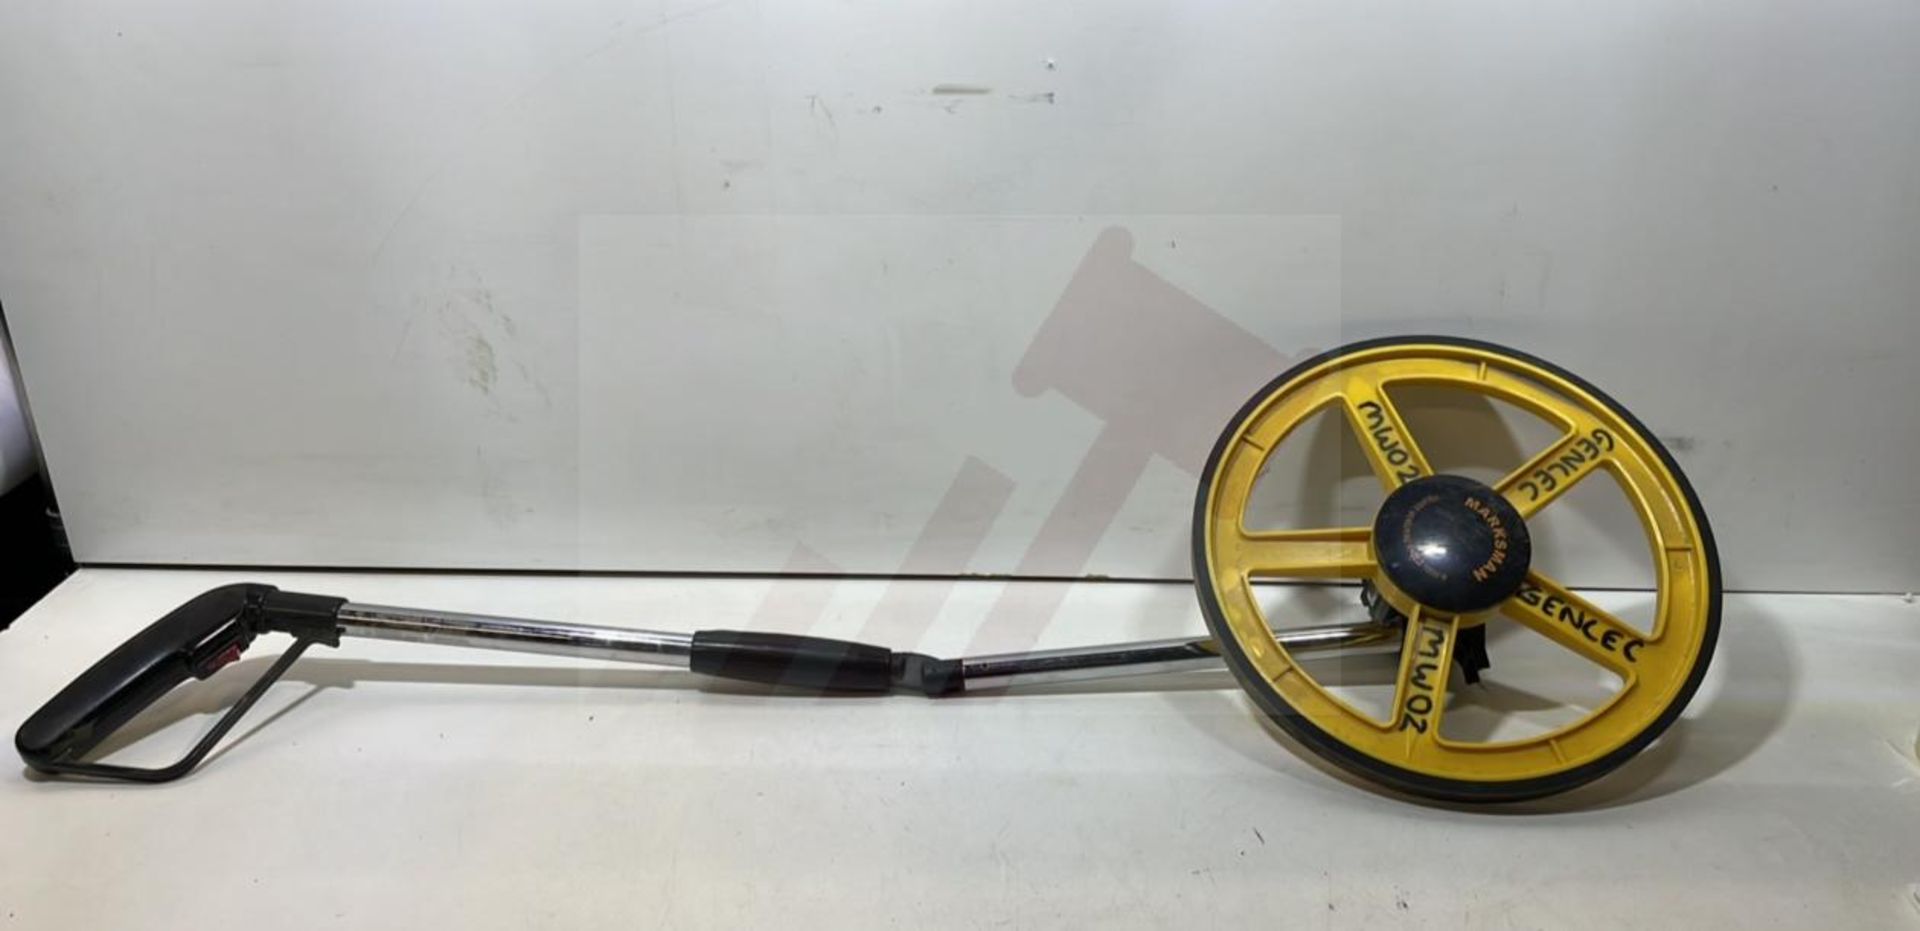 Marksman Folding Distance Measuring Wheel - Image 3 of 4